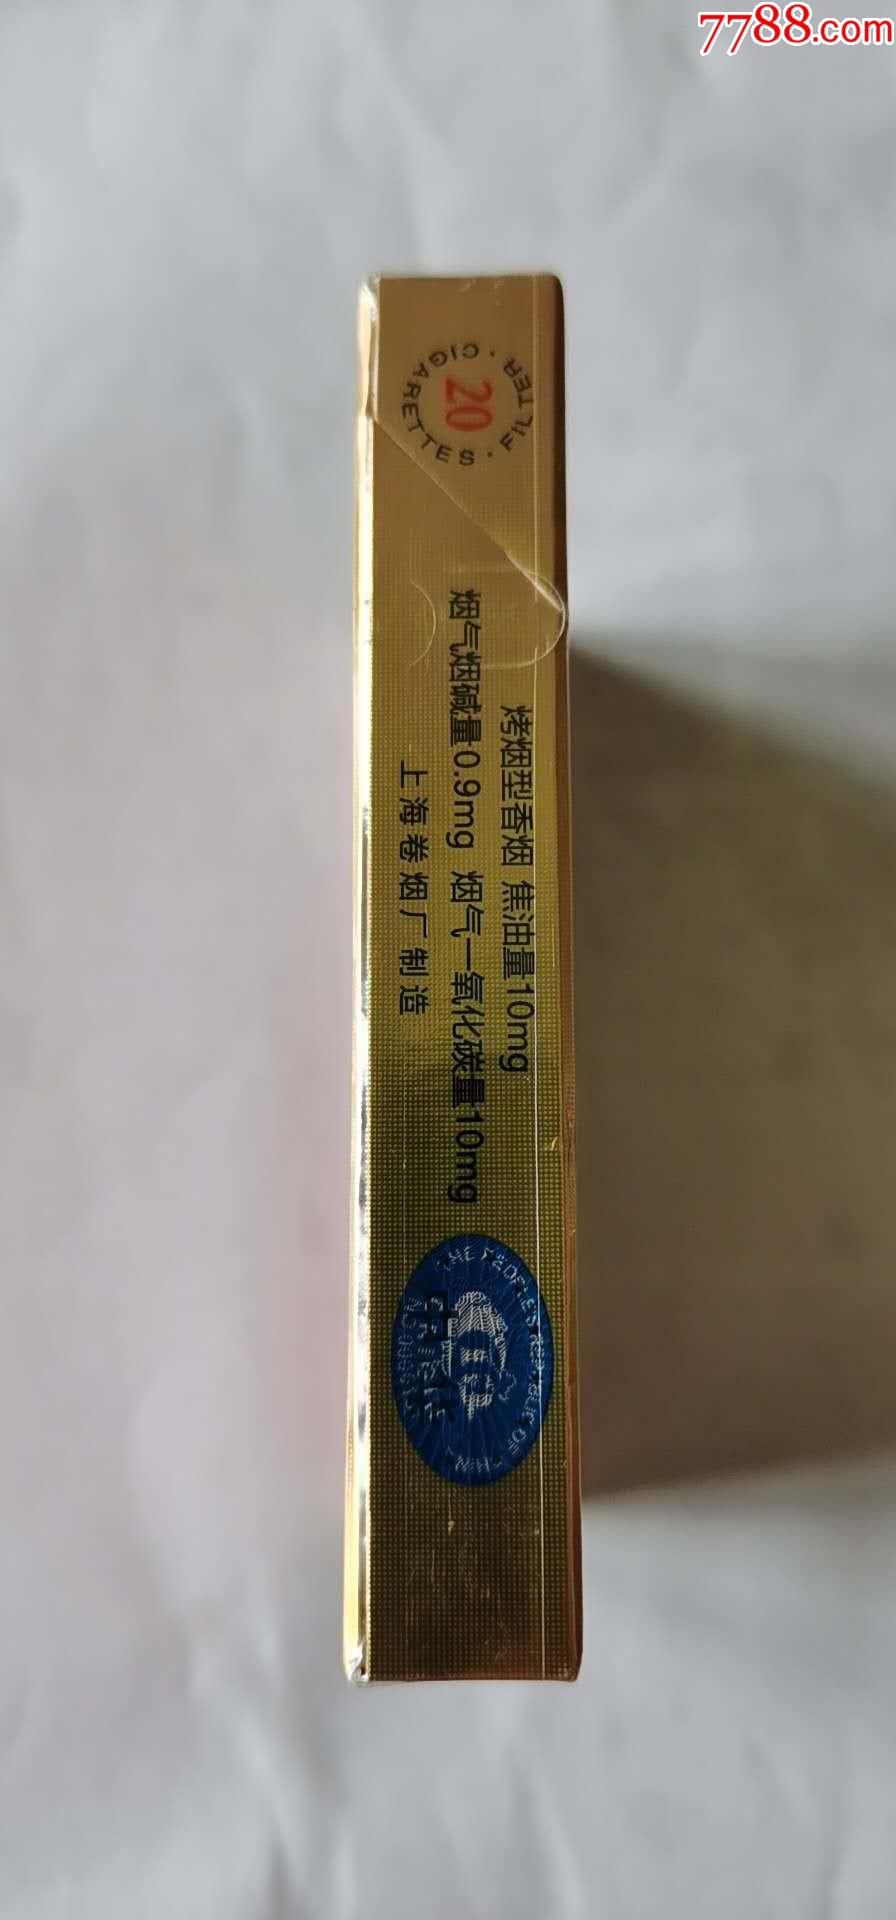 中华双中支非卖品,烟标/烟盒,卡标,条码标,嘴标84s,直横不分,上海,20